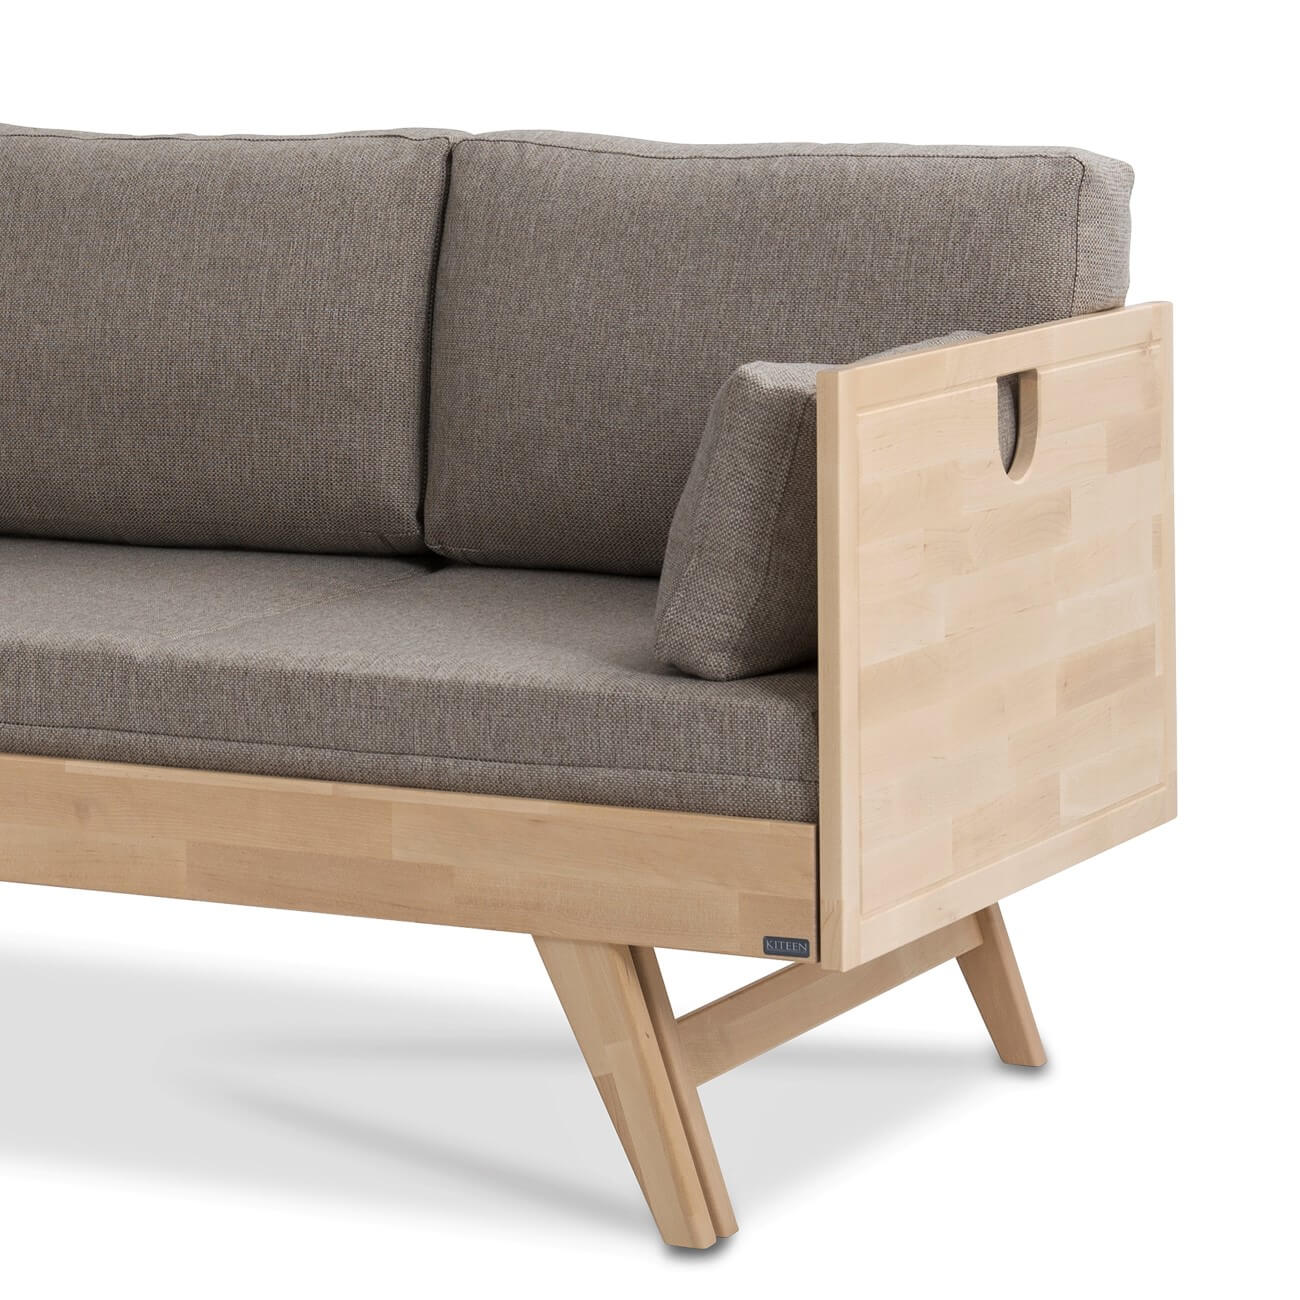 Sofa drewniana NOTTE z brzozy skandynawskiej z funkcją spania. Fragment z drewnianym bokiem i wysokimi nogami. Widoczny beżowy materac i 3 poduszki. Nowoczesny minimalistyczny styl